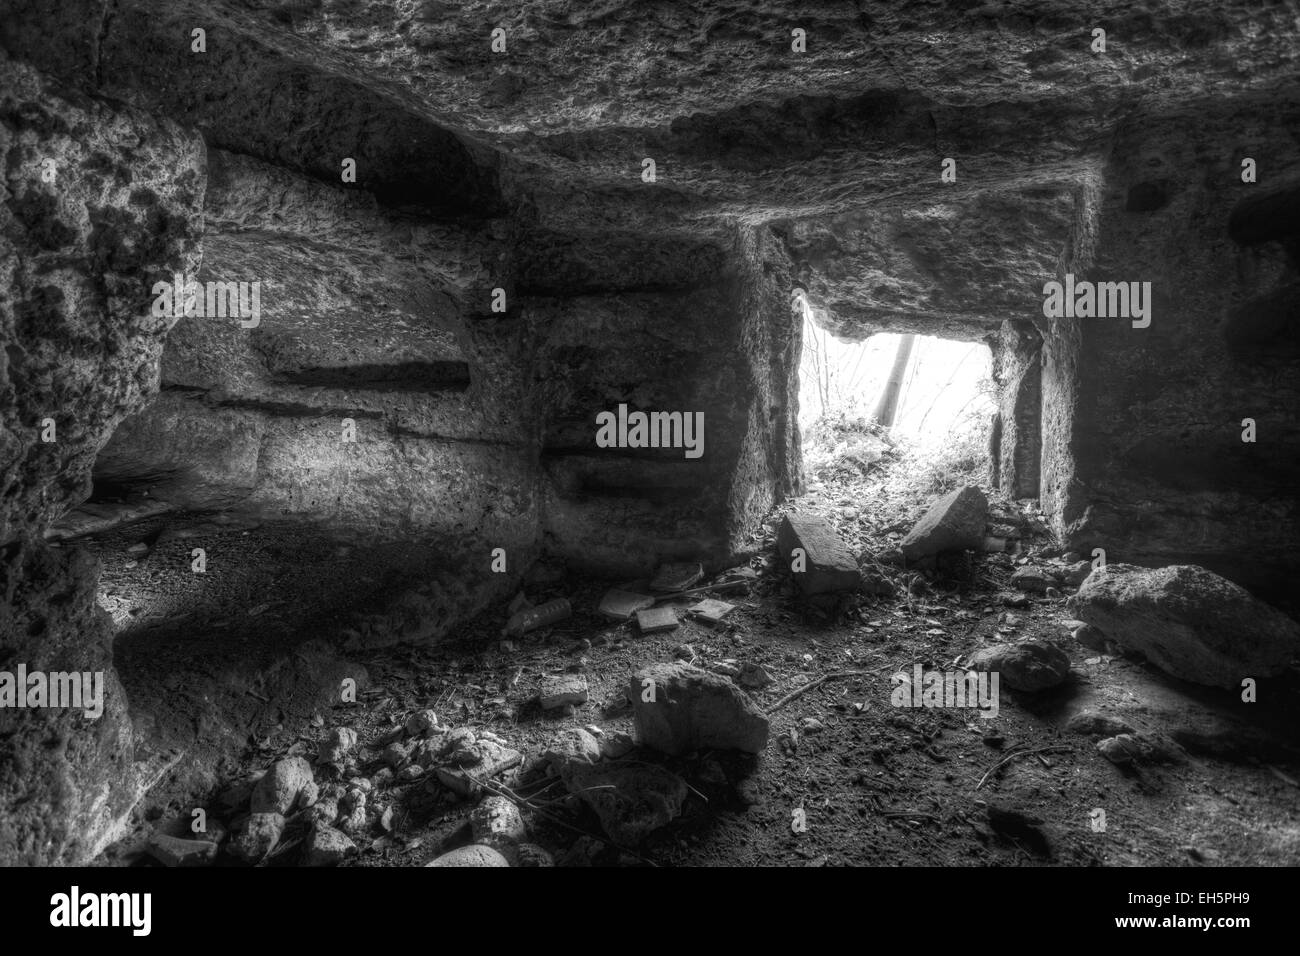 Mulinello catacomba, antico cimitero sotterraneo della tarda antichità, bizantina in Sicilia Foto Stock